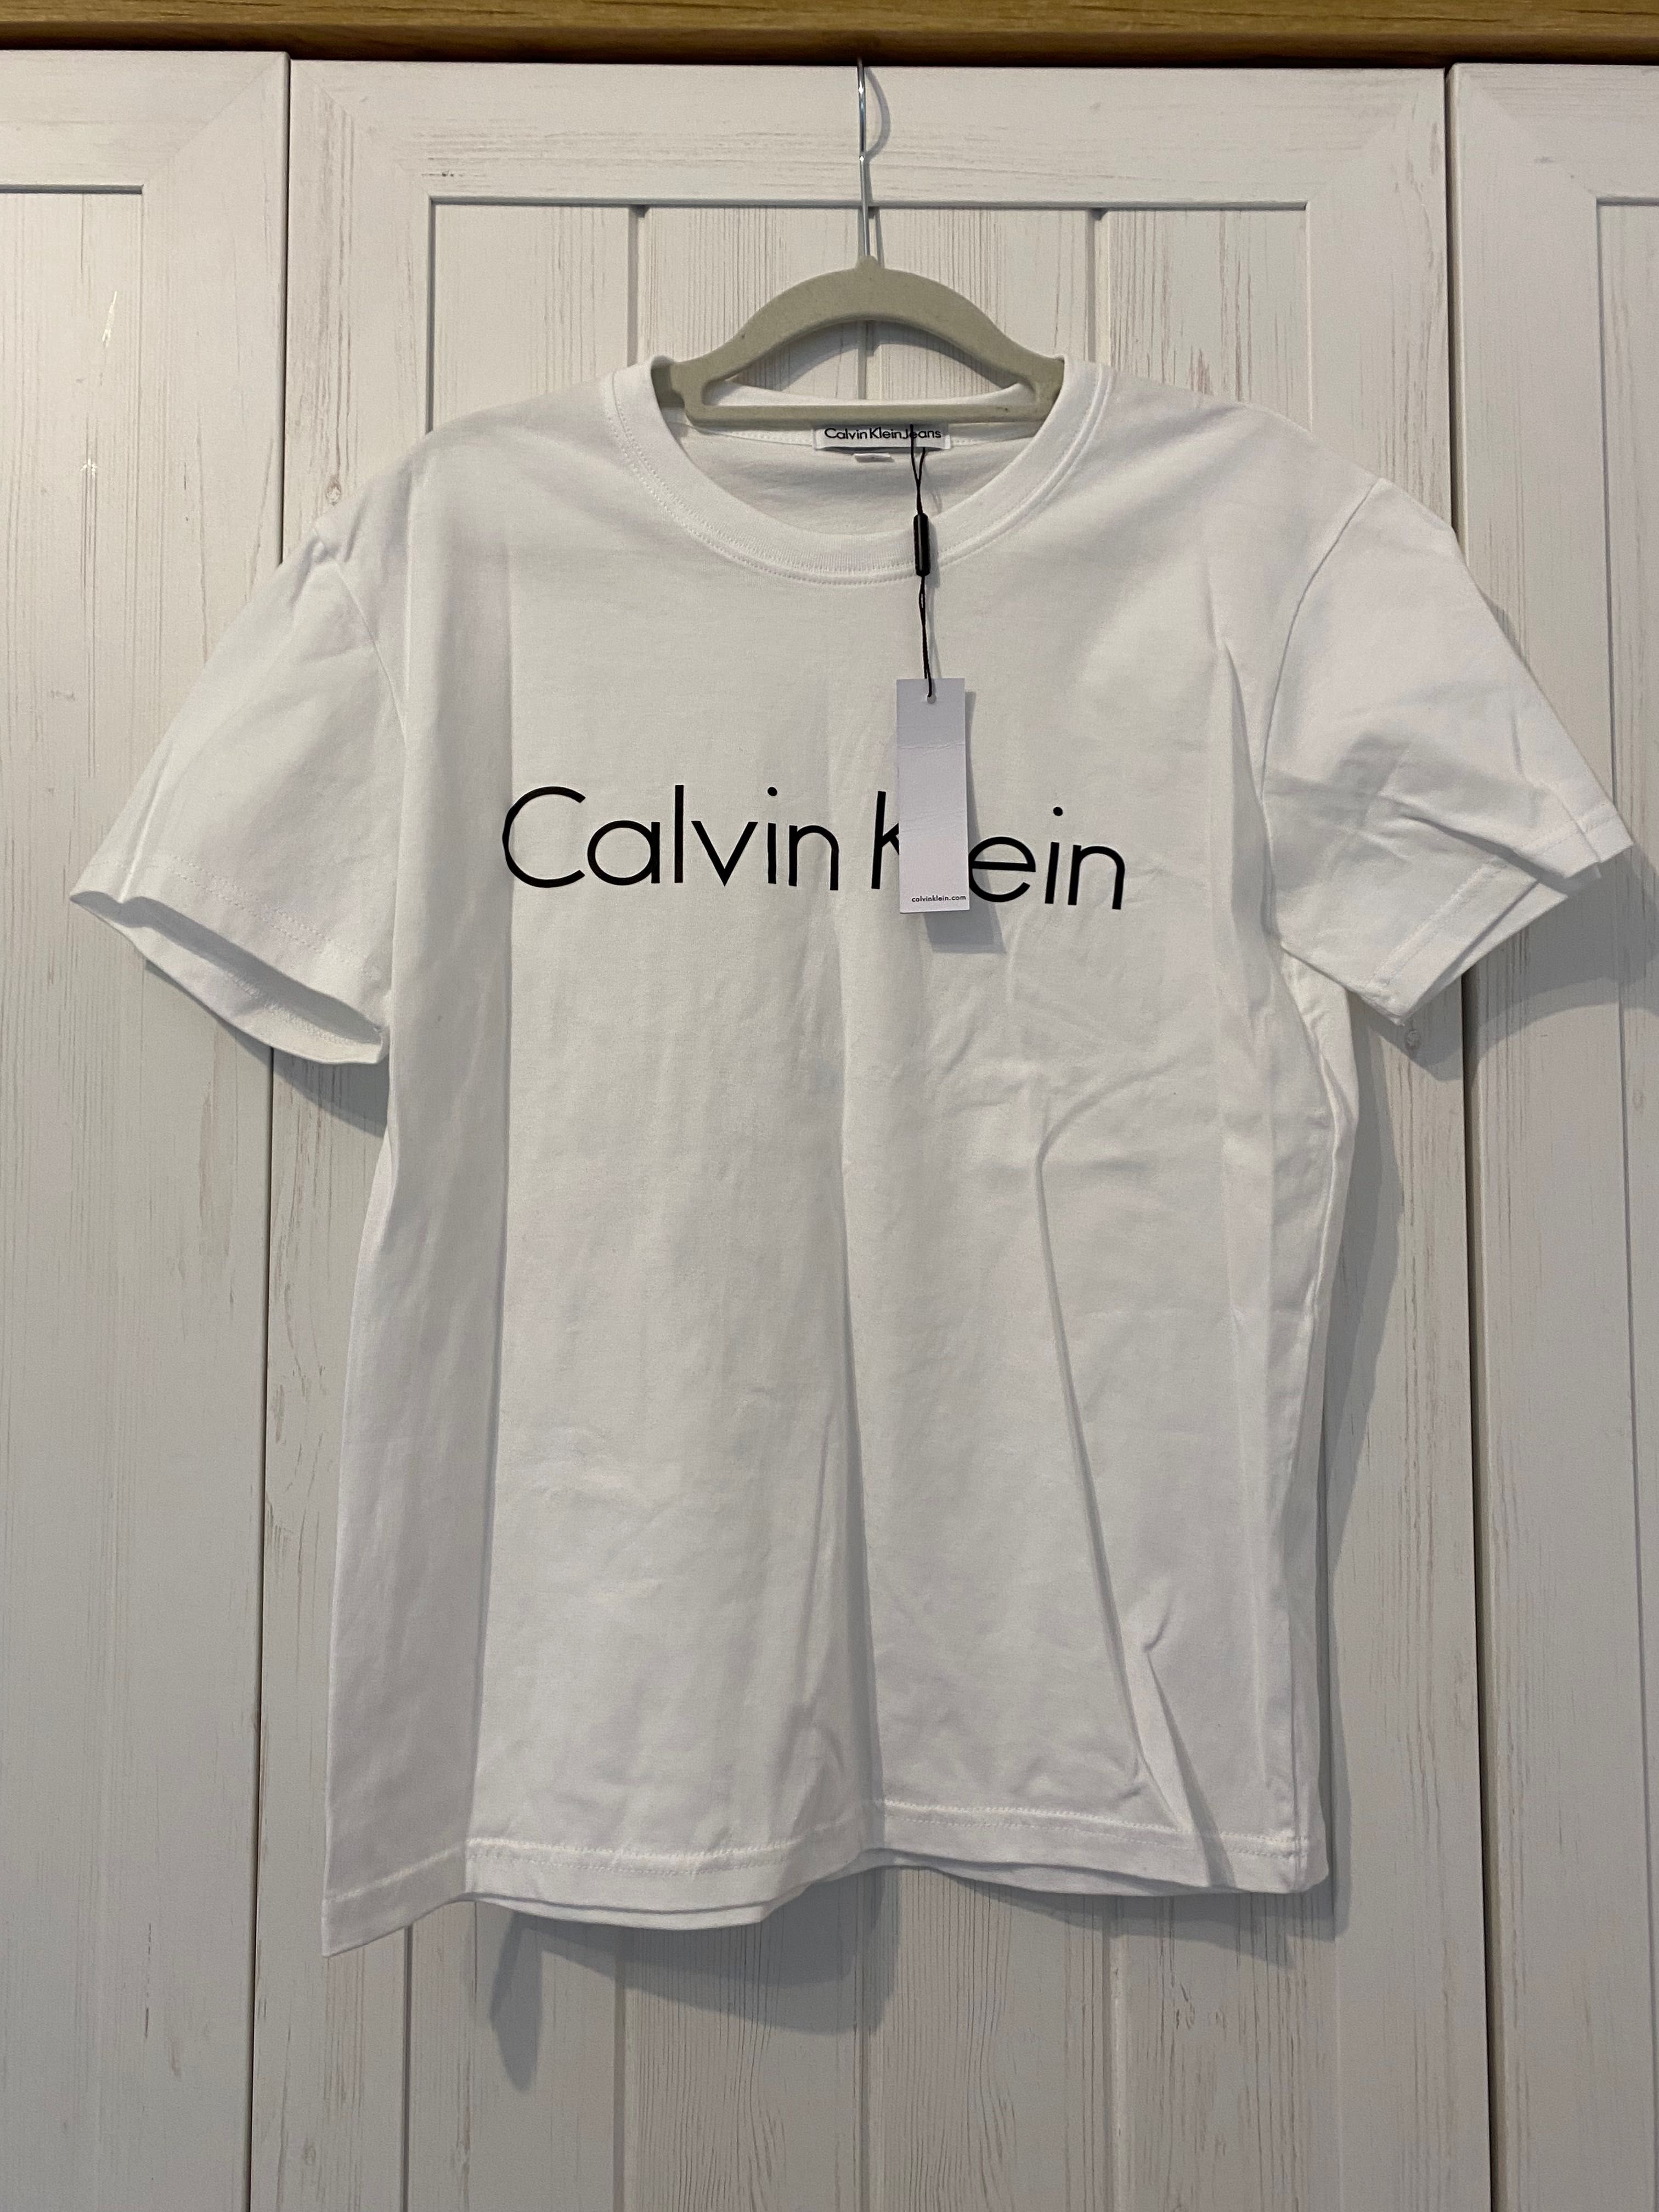 T-shirt koszulka damska Calvin Klein nowa